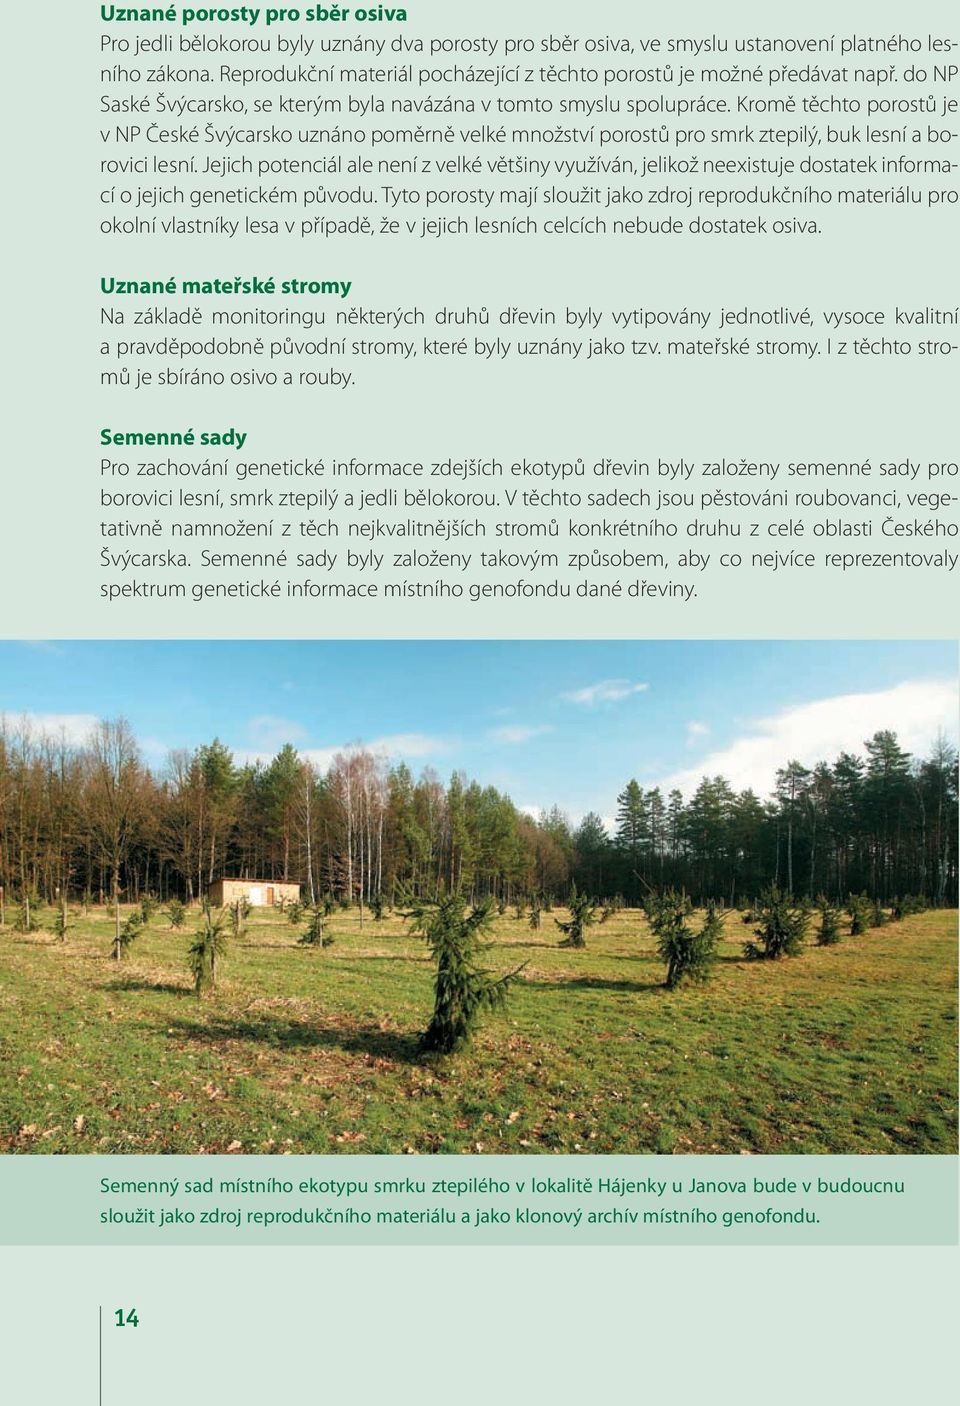 Kromě těchto porostů je v NP České Švýcarsko uznáno poměrně velké množství porostů pro smrk ztepilý, buk lesní a borovici lesní.